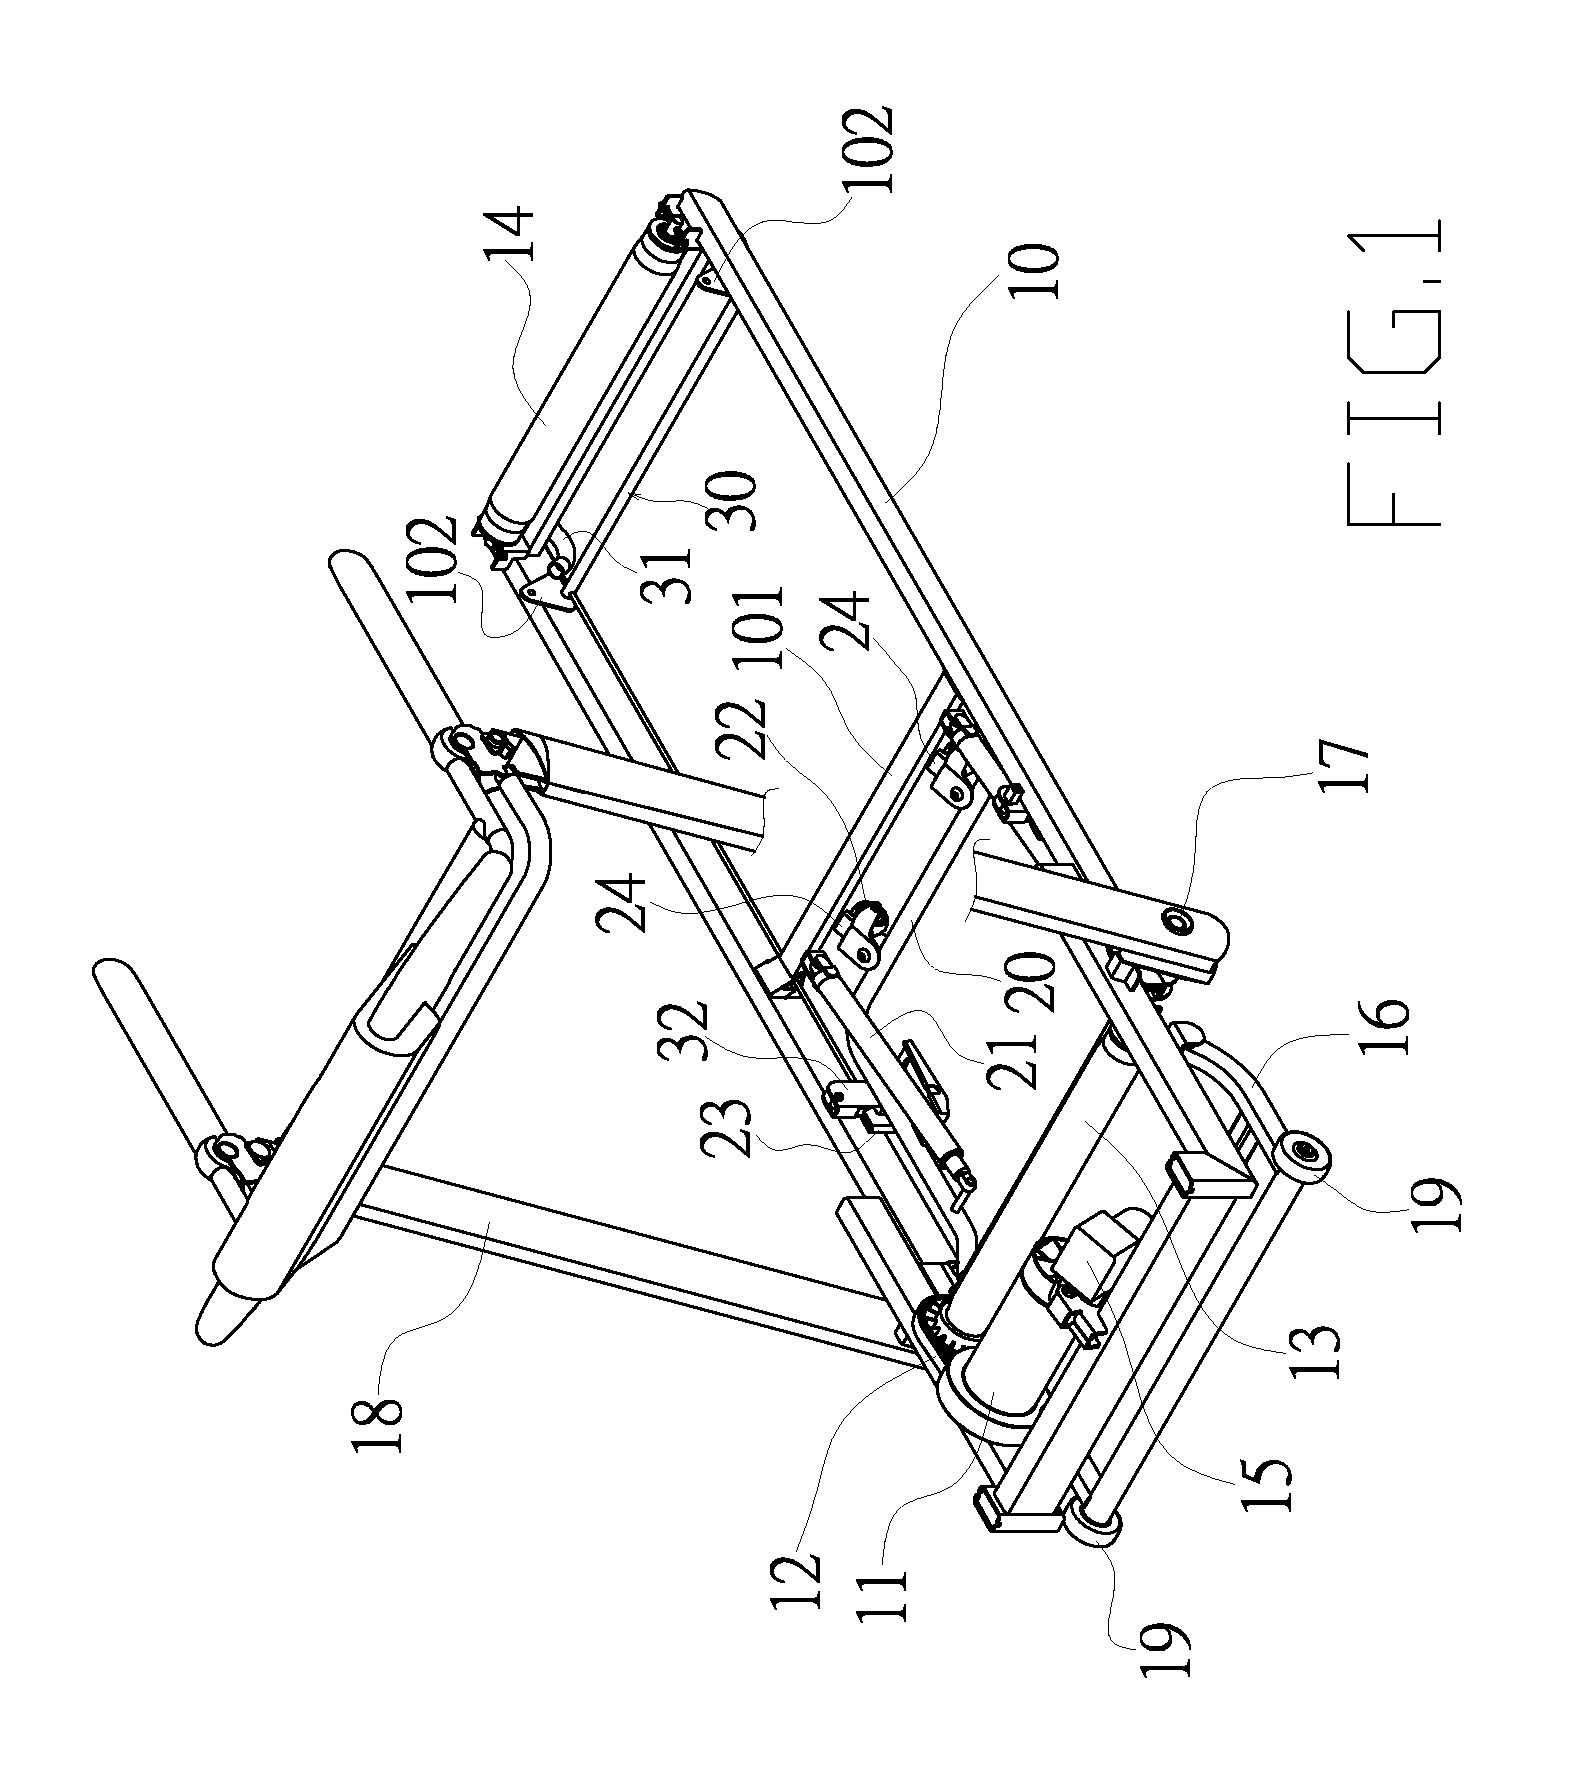 Folding mechanism of a treadmill